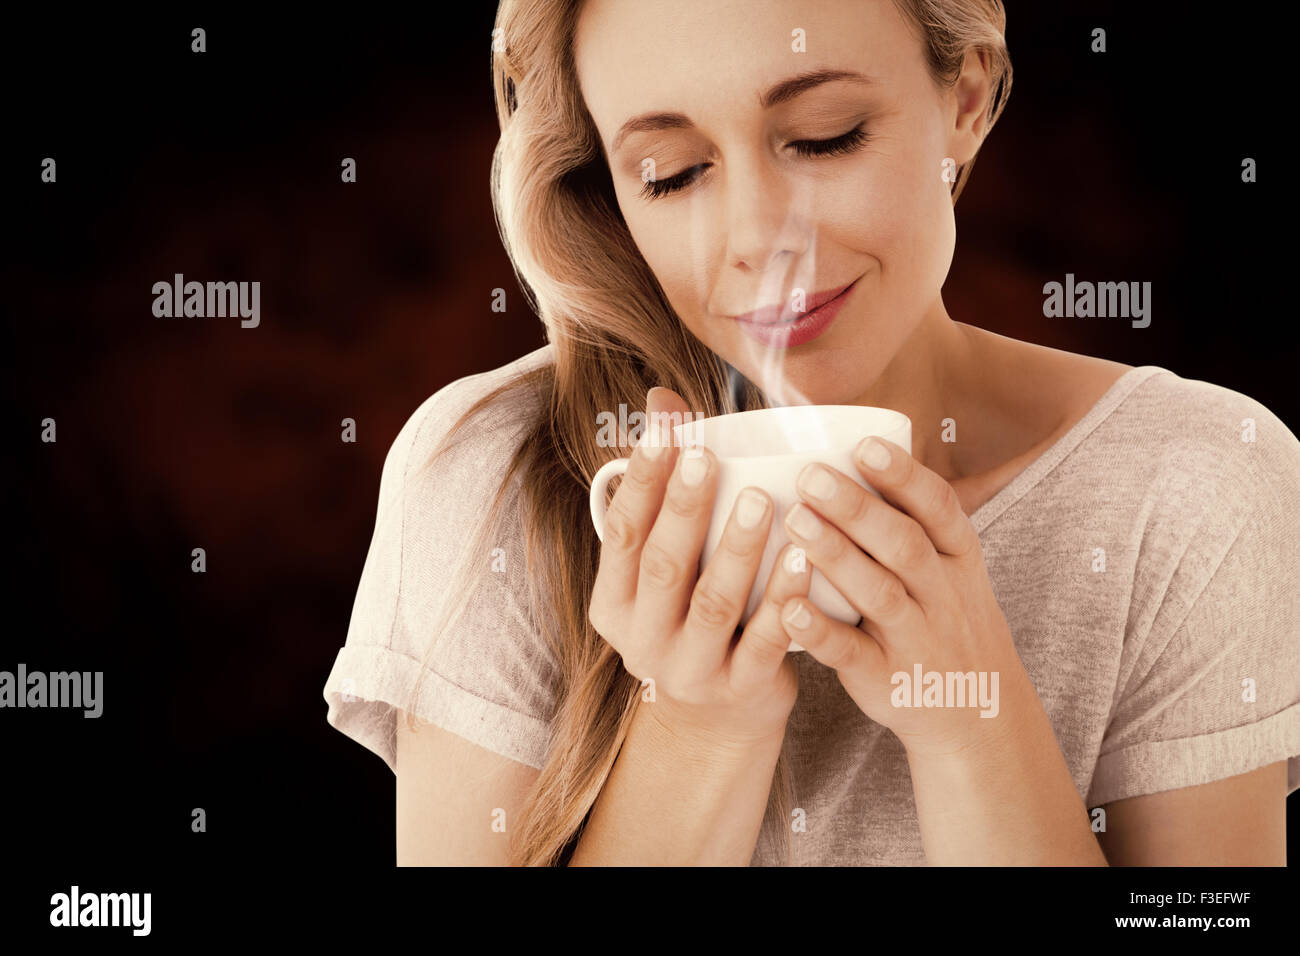 Immagine composita della bionda sorridente con bevanda calda rilassante Foto Stock